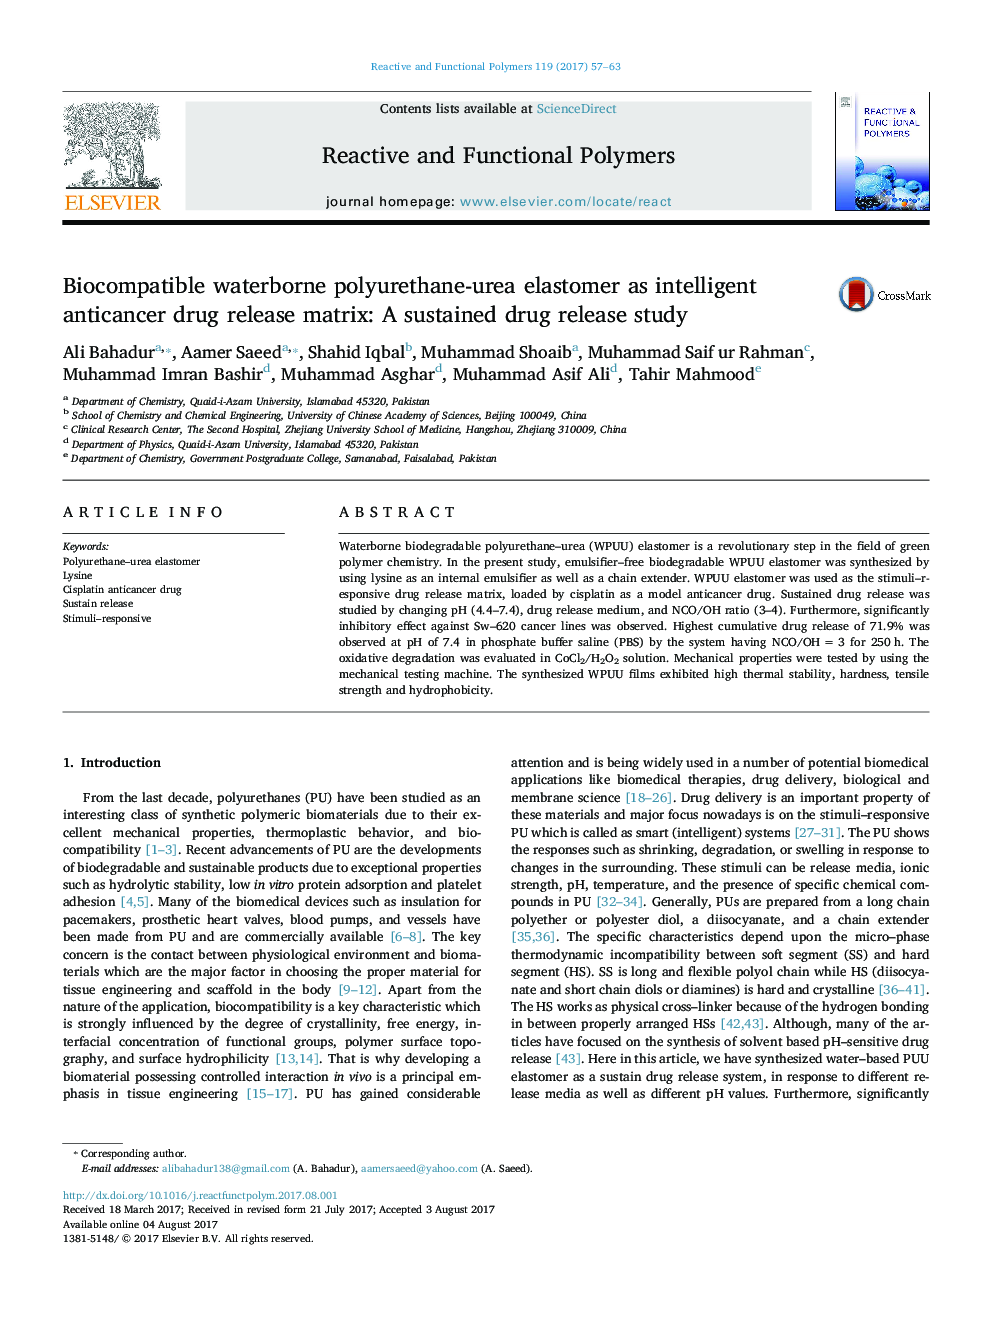 بیو سازگار با پلی اورتان اوره الاستومر به عنوان ماتریکس آزادی دارویی ضد سرطانی هوشمند: یک مطالعه آزمایشی طولانی مدت 